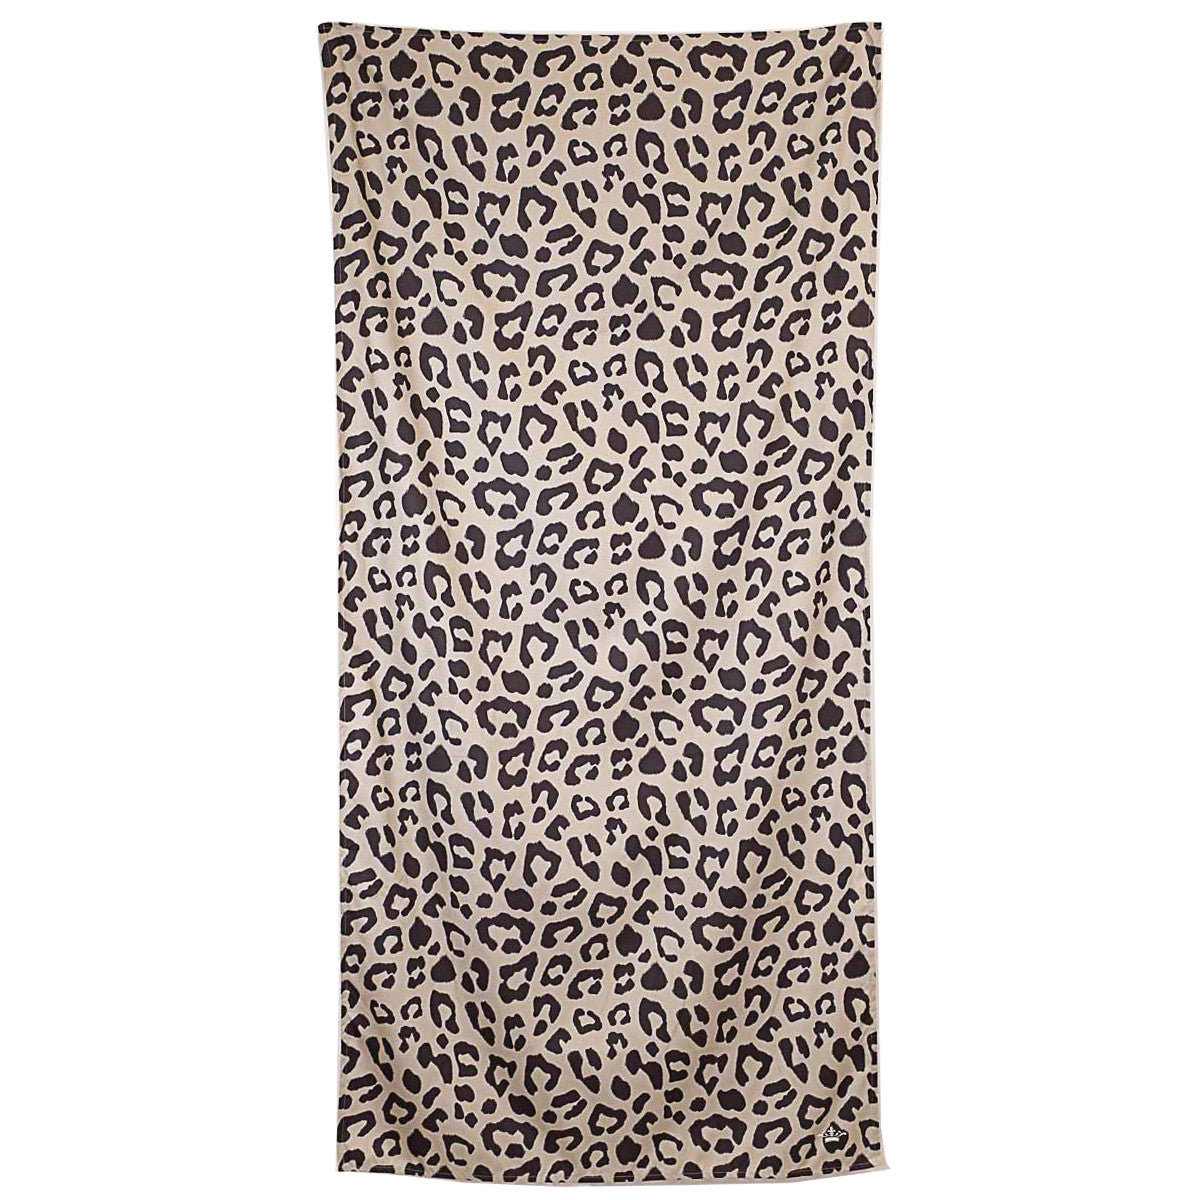 Leopard Beach Towel in Black/Shell